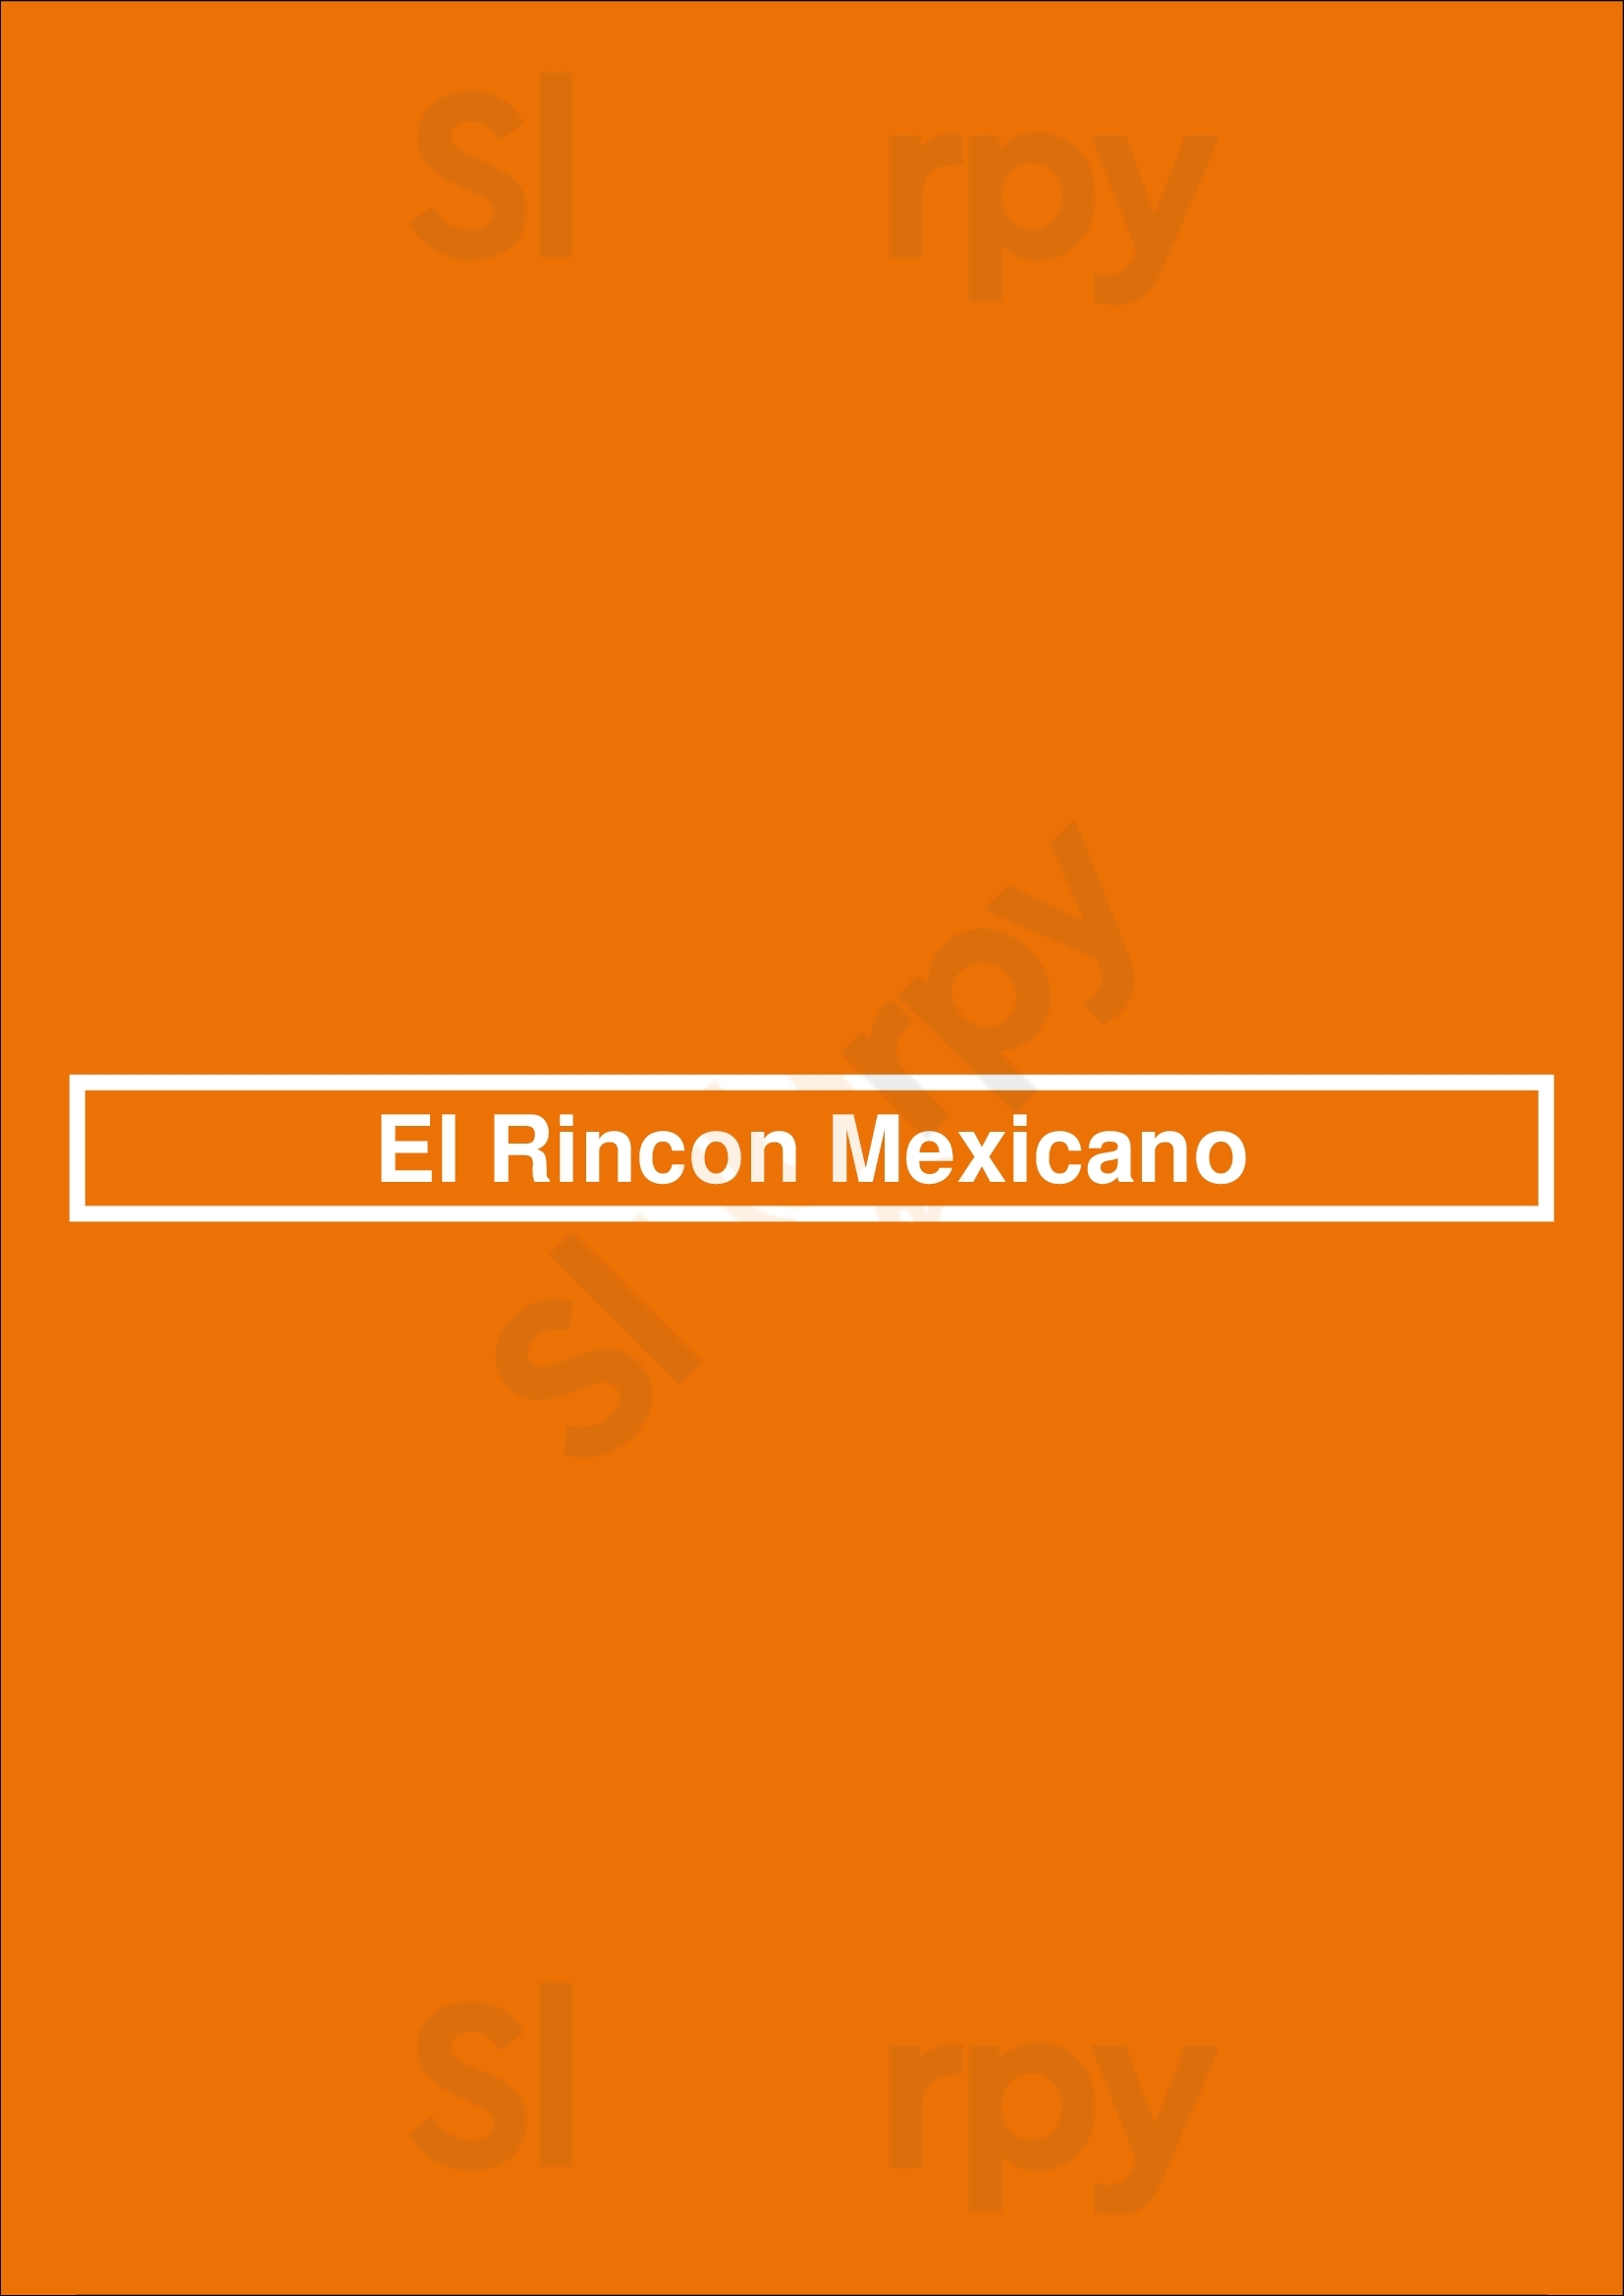 El Rincon Mexicano Toronto Menu - 1